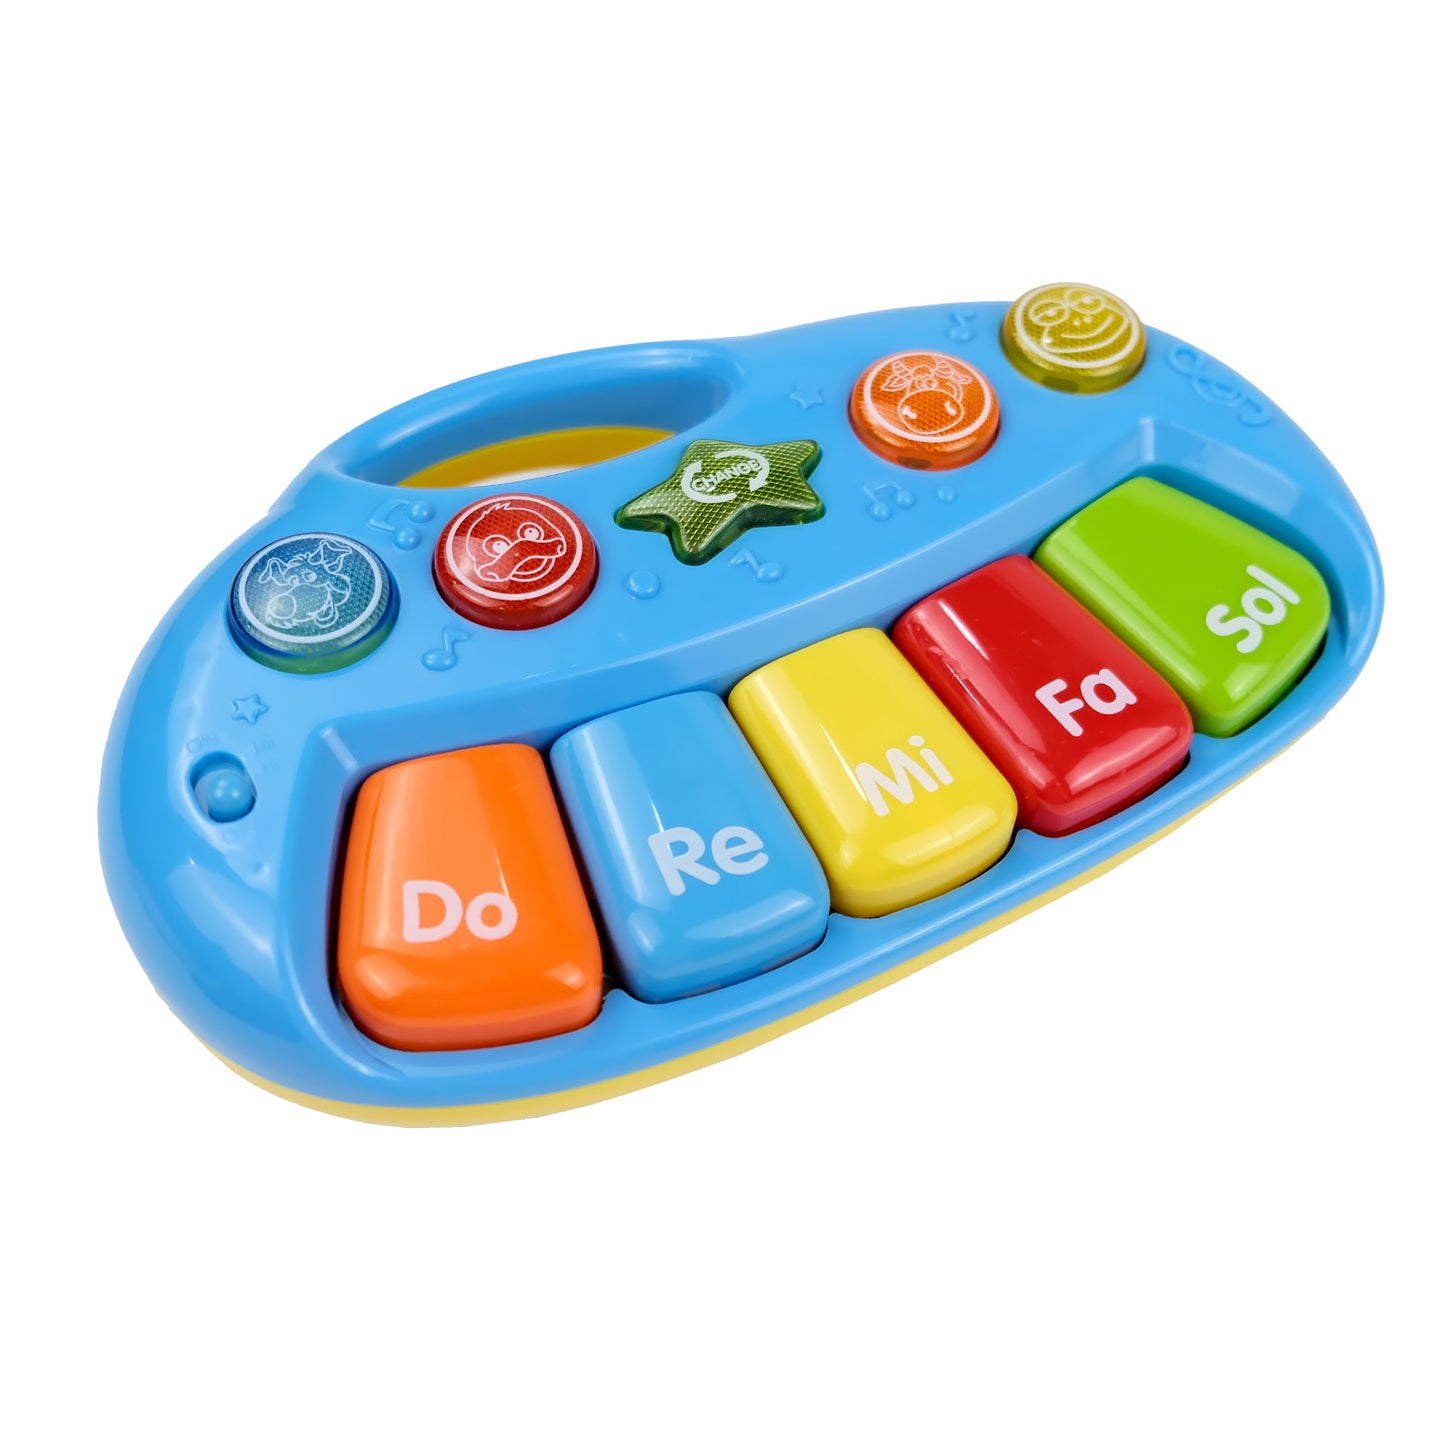 Juguetes de teclado electrónico de 5 teclas, juguetes musicales, teclados electrónicos divertidos para niños, juguetes de iluminación con interés musical